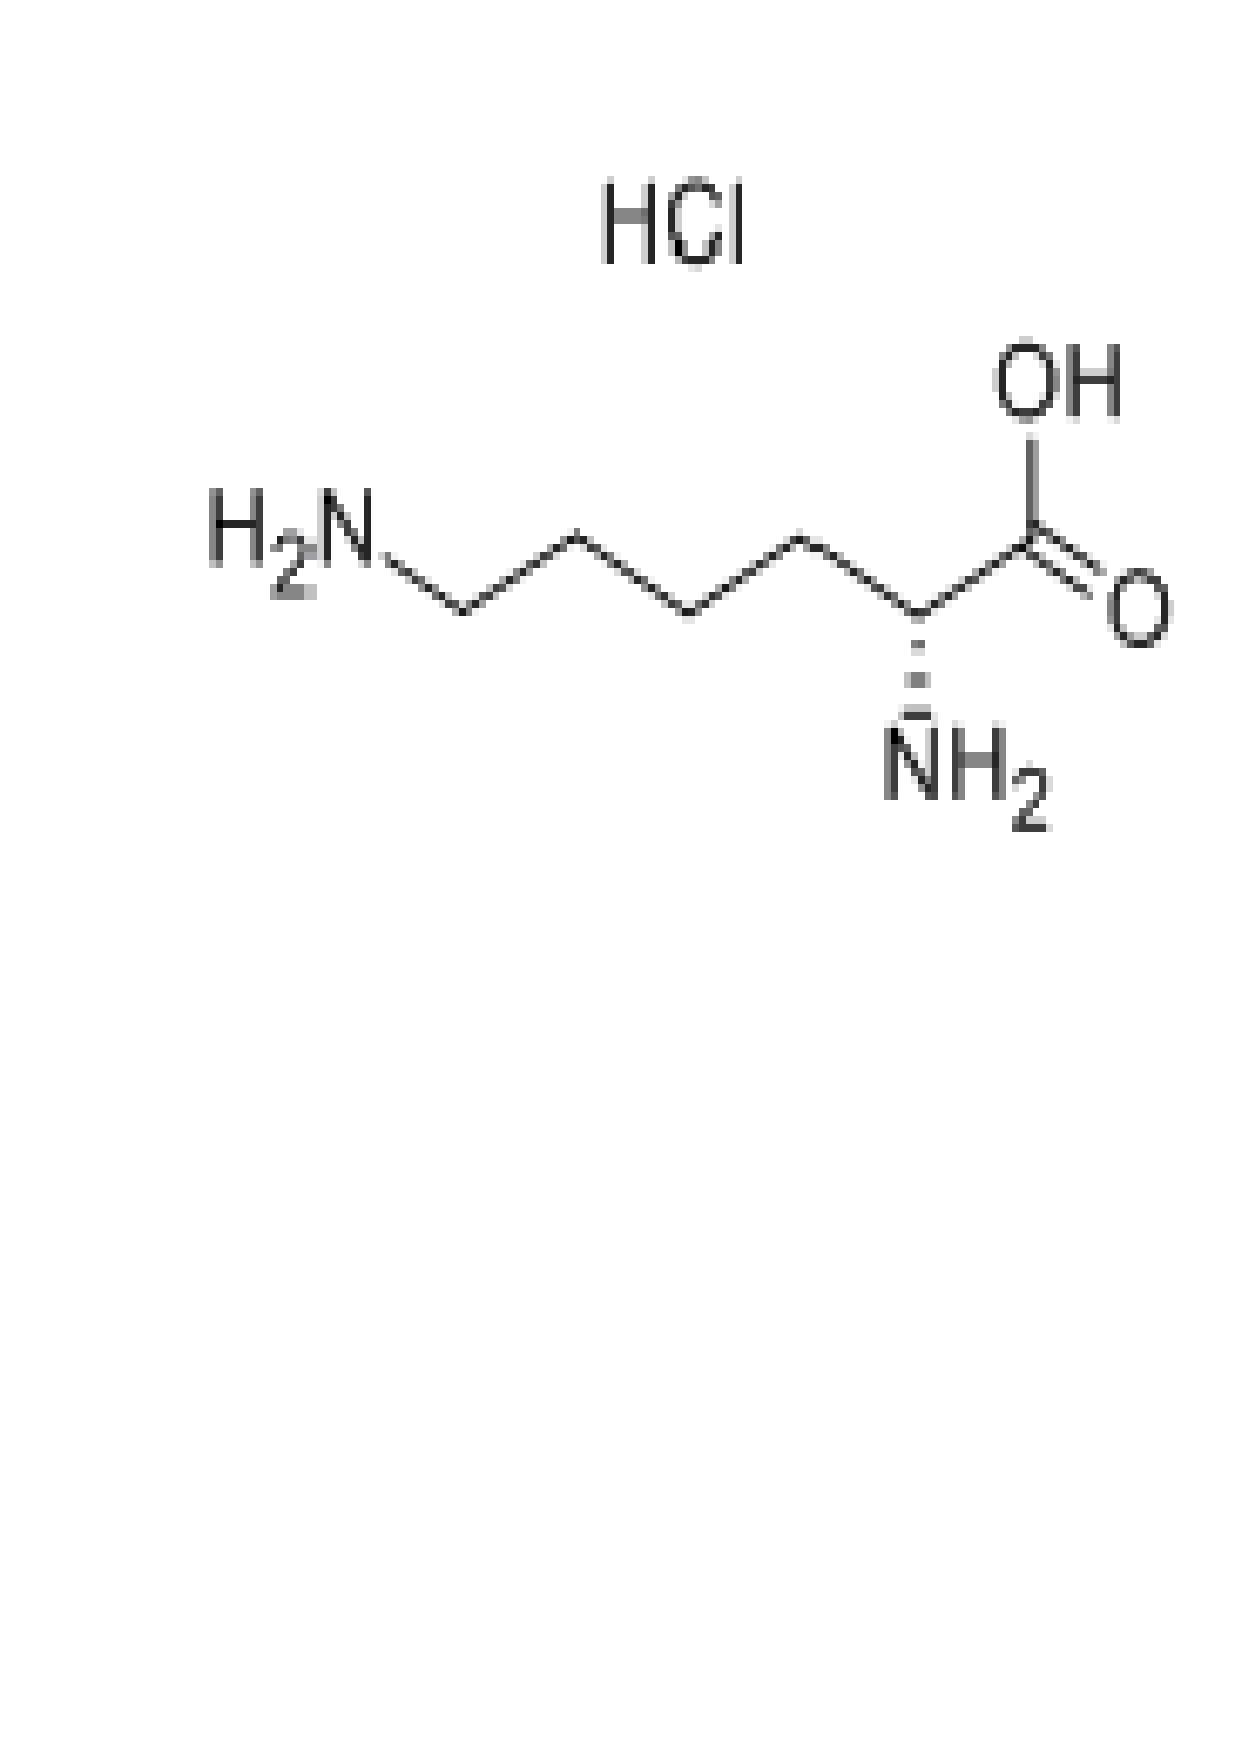 赖氨酸结构简式图图片